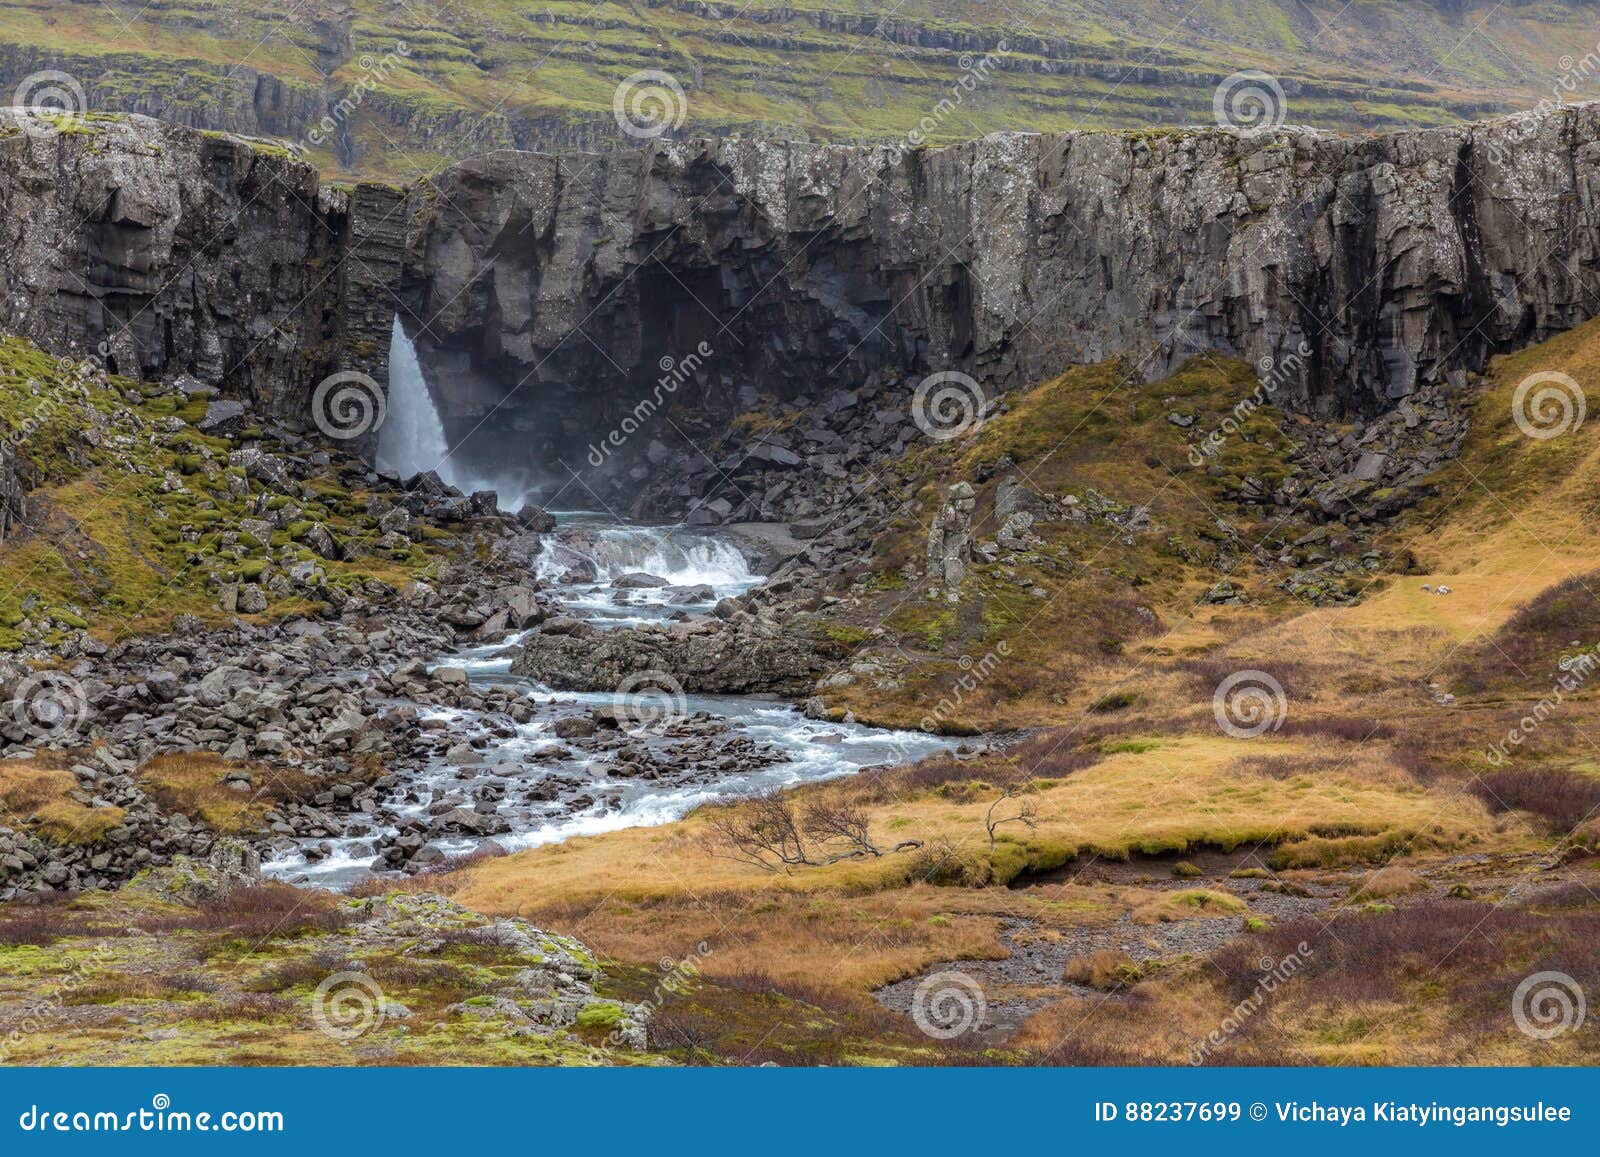 iceland berufjordur waterfall